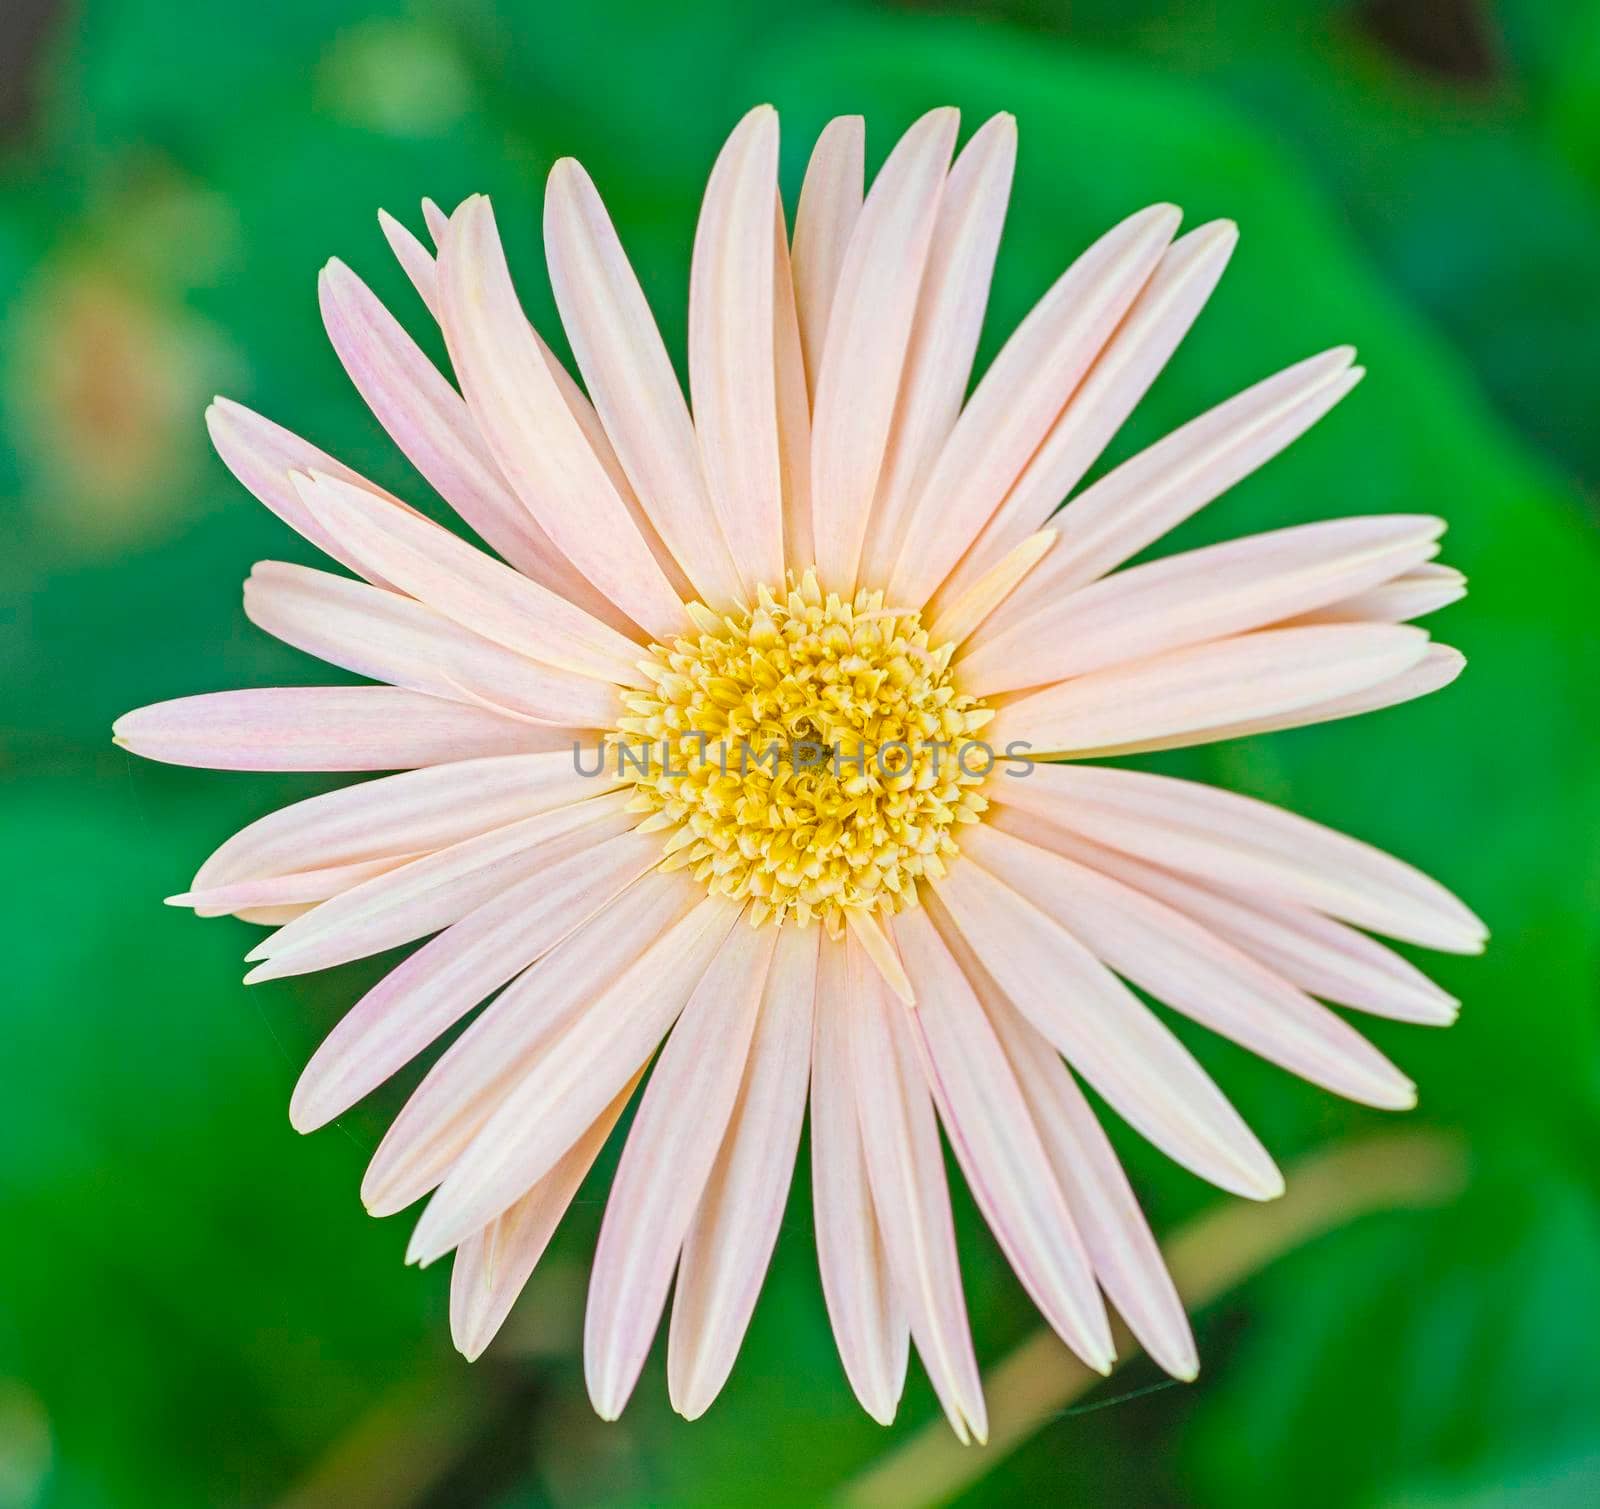 Closeup of a daisy flower by paulvinten